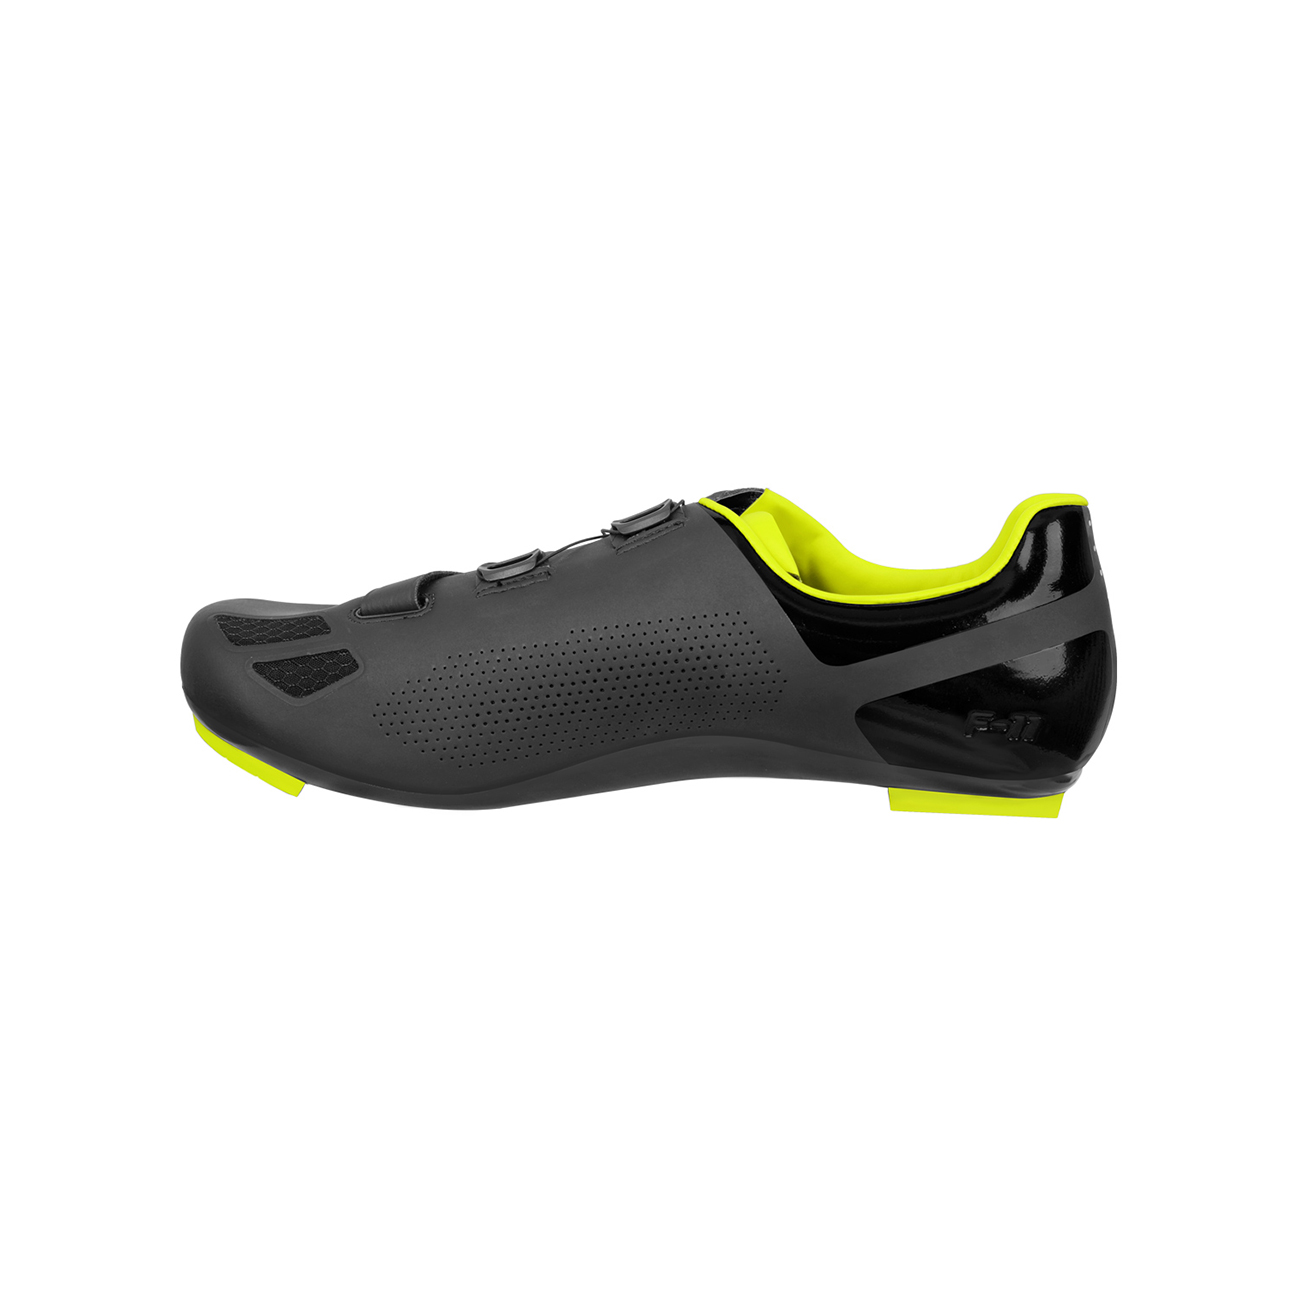 FLR Kerékpáros Cipő - F11 - Sárga/fekete